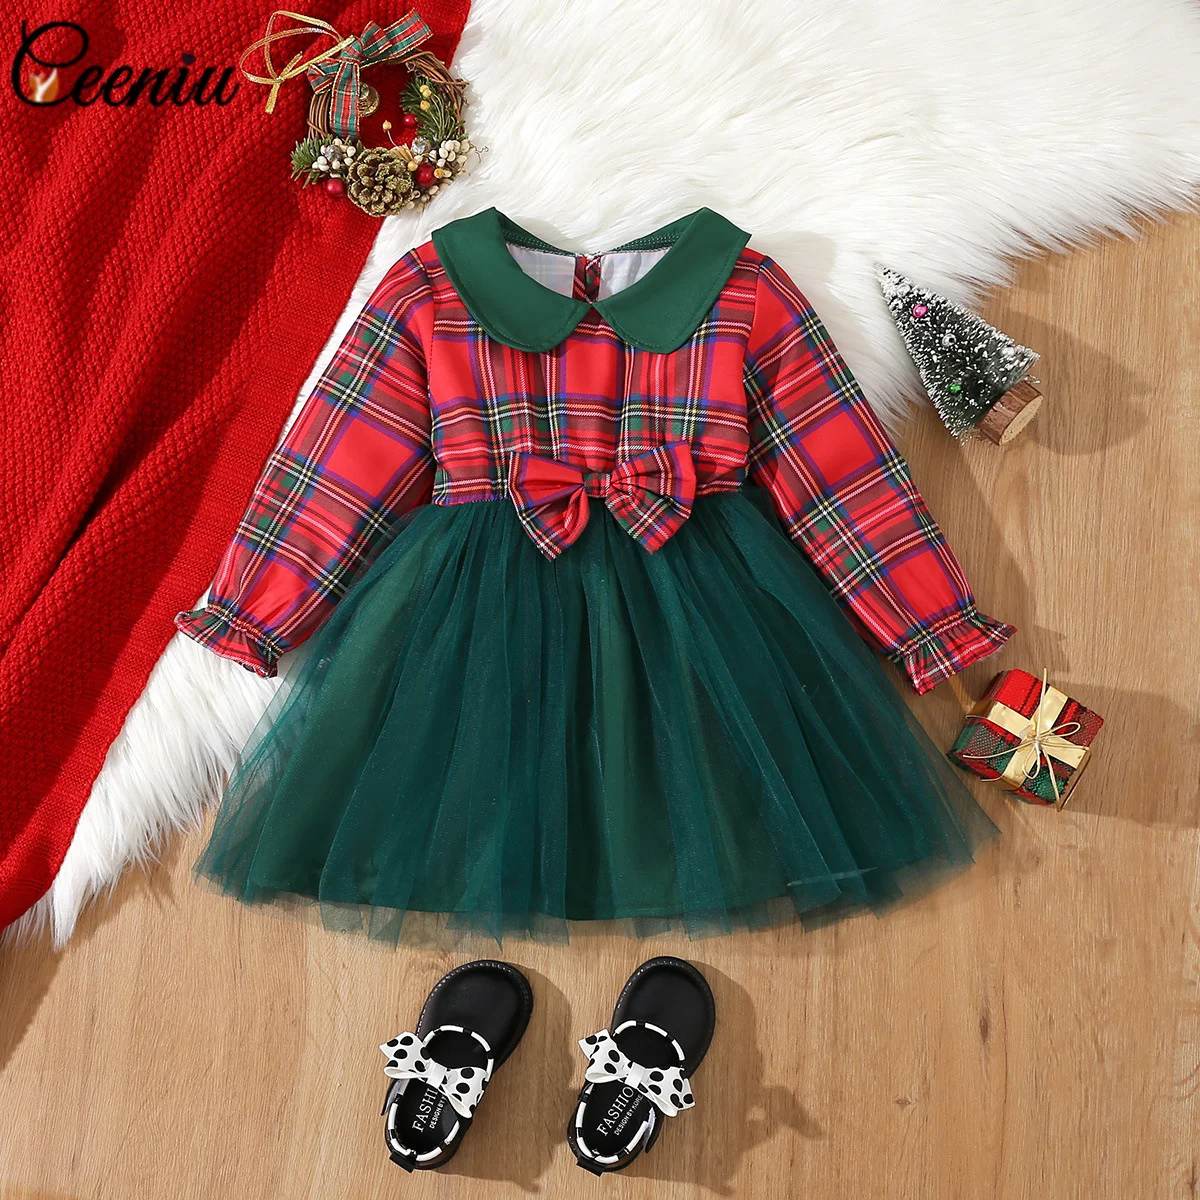 Рождественские платья Ceeniu для девочек 2-6 лет, зимнее красное платье в клетку, новогодний костюм, вечернее платье принцессы, детская рождественская одежда